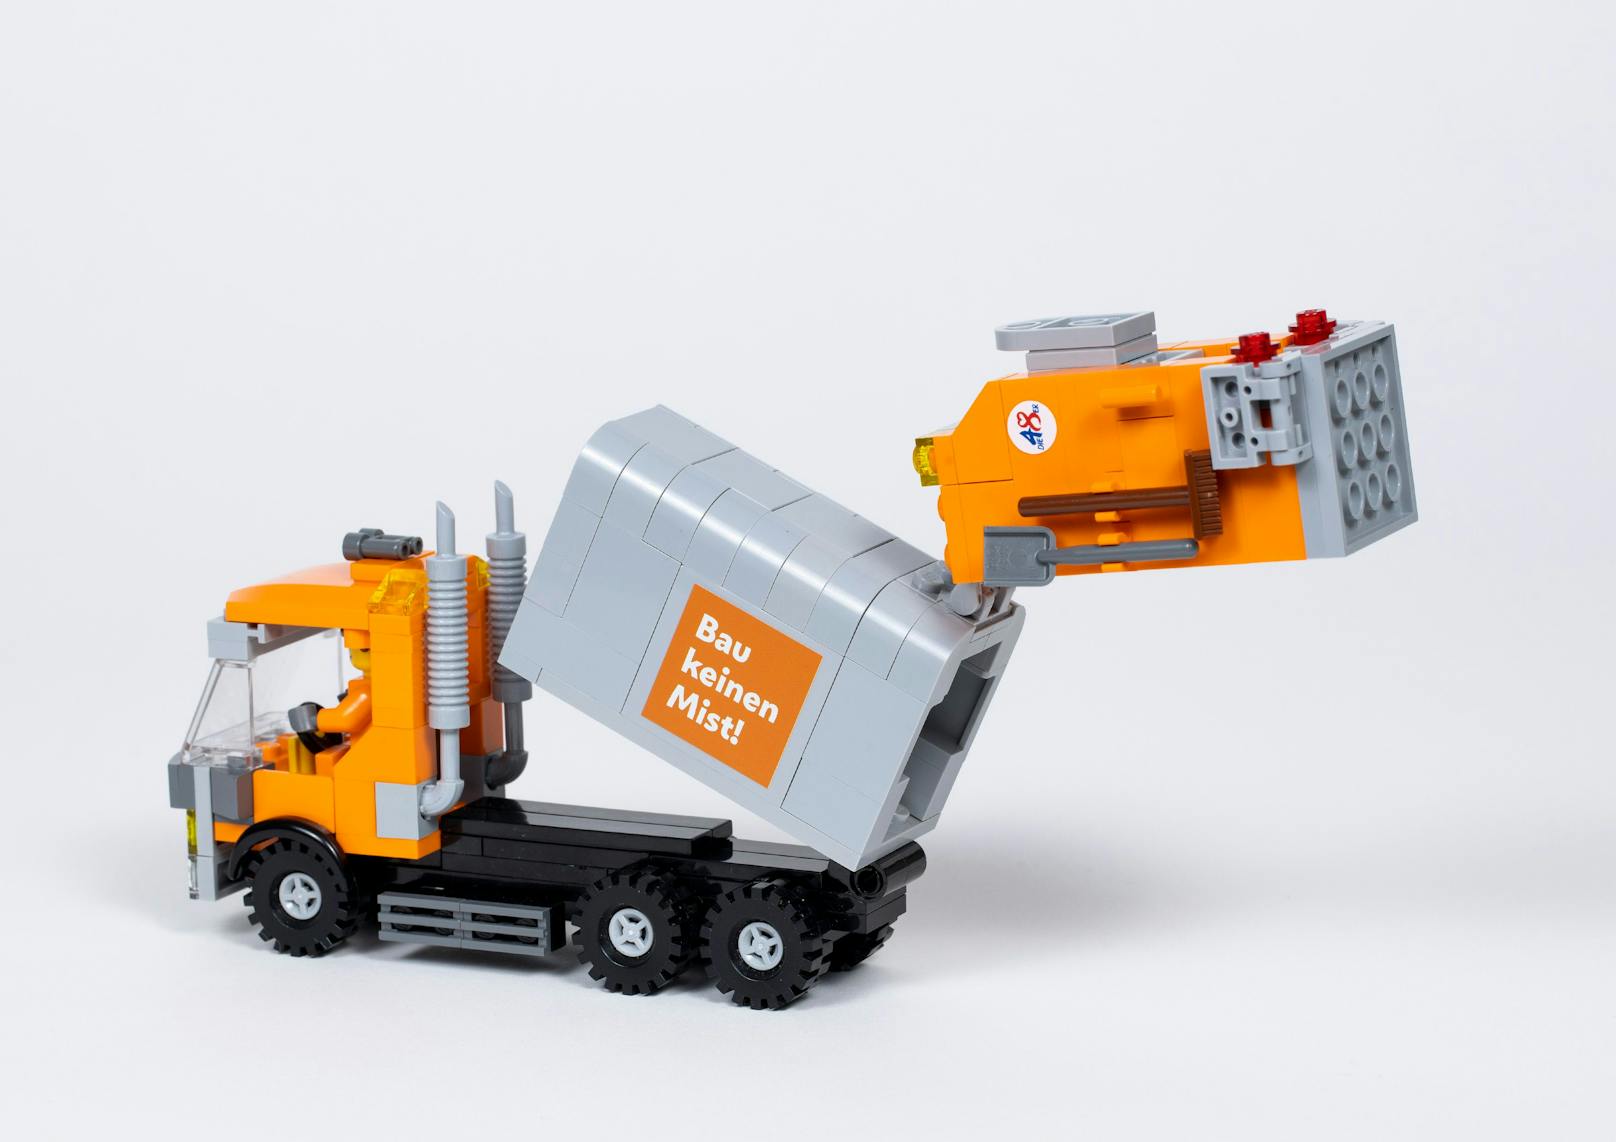 Das aus insgesamt 263 Einzelteilen bestehende Set enthält ein Müllsammelfahrzeug mit beweglichen Teilen, zwei orangene Figuren, sechs Behälter mit verschiedenen Aufklebern sowie eine Bauanleitung.